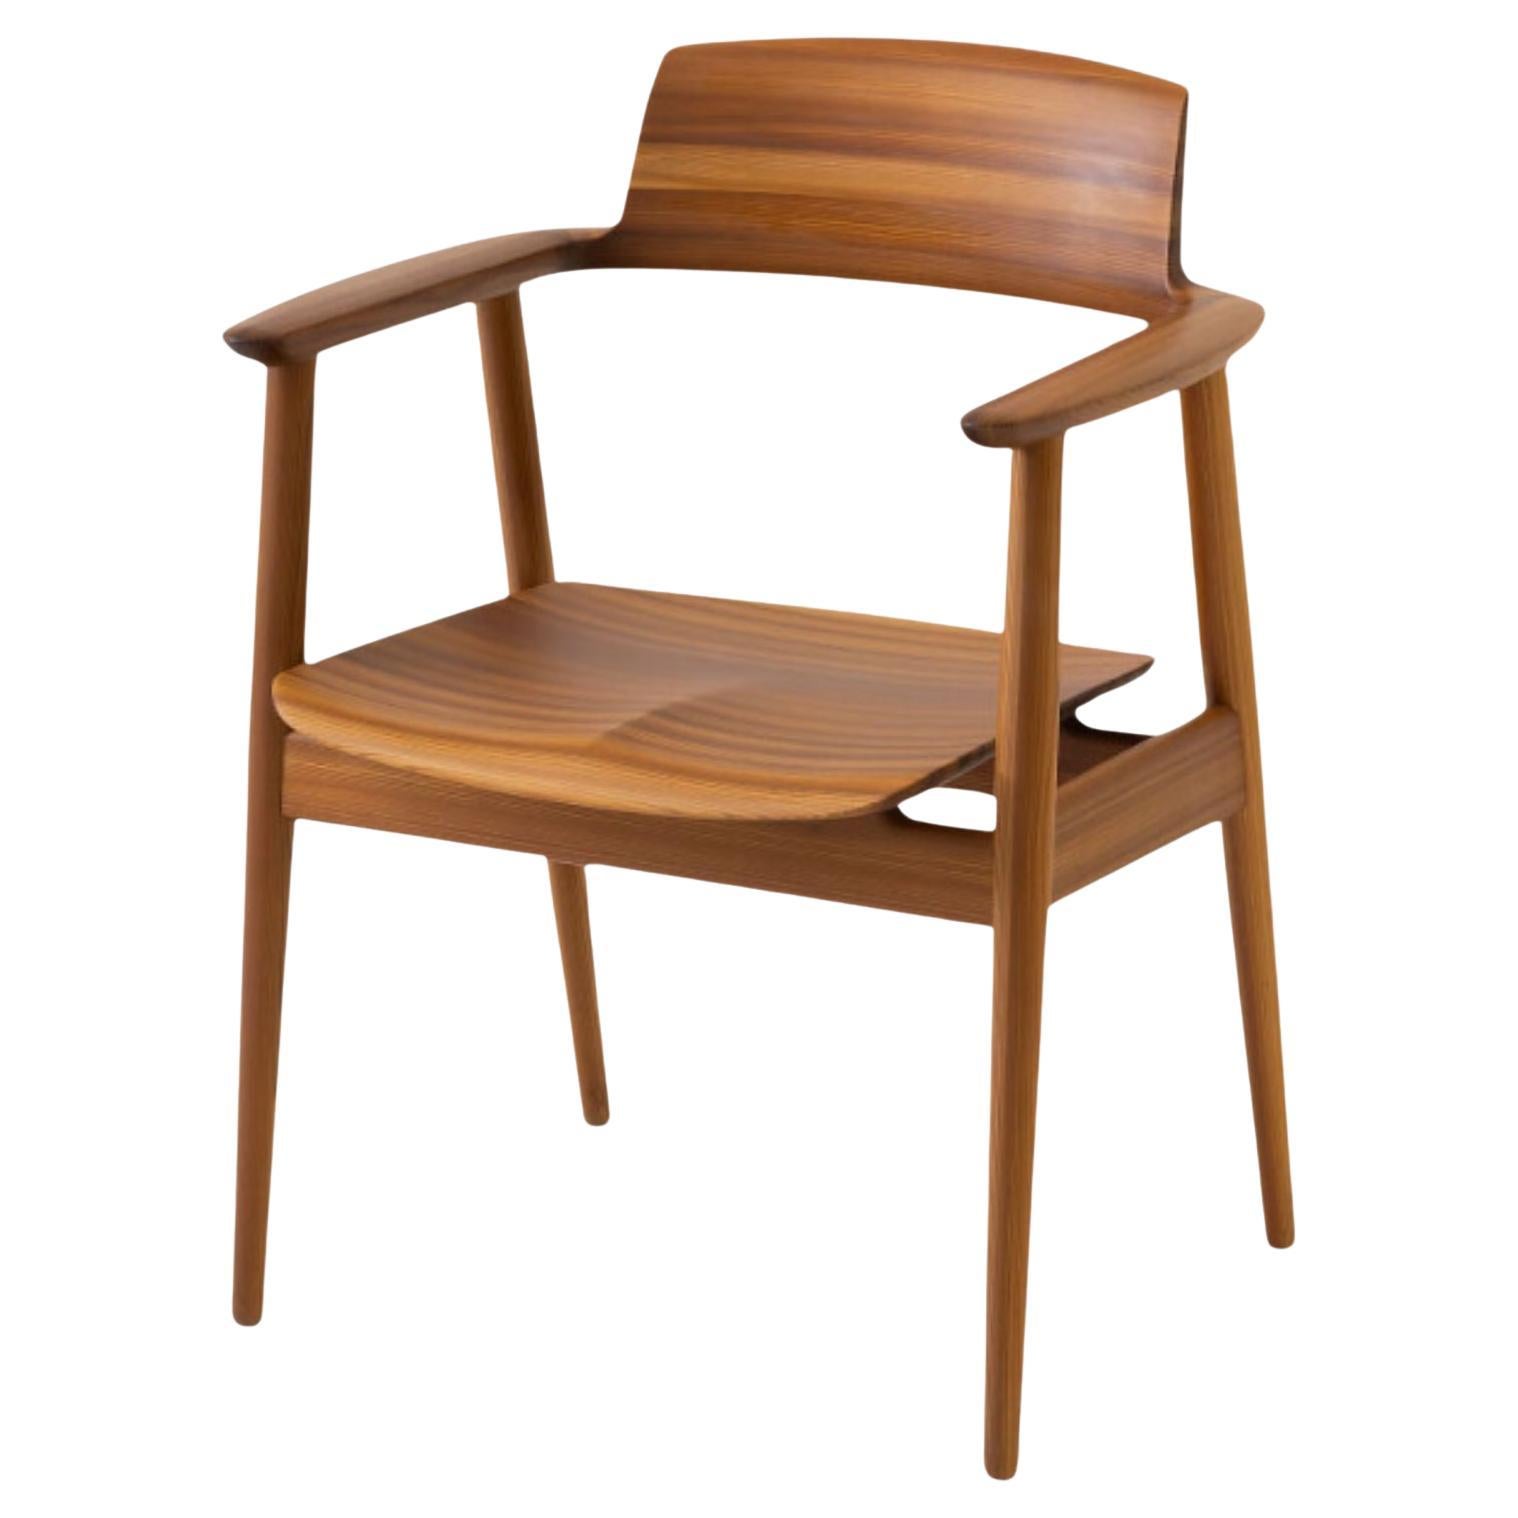 Kawakami 'Kisaragi' Model KJ200 Chair in Japanese Cedar and Upholstery for Hida In New Condition For Sale In Glendale, CA